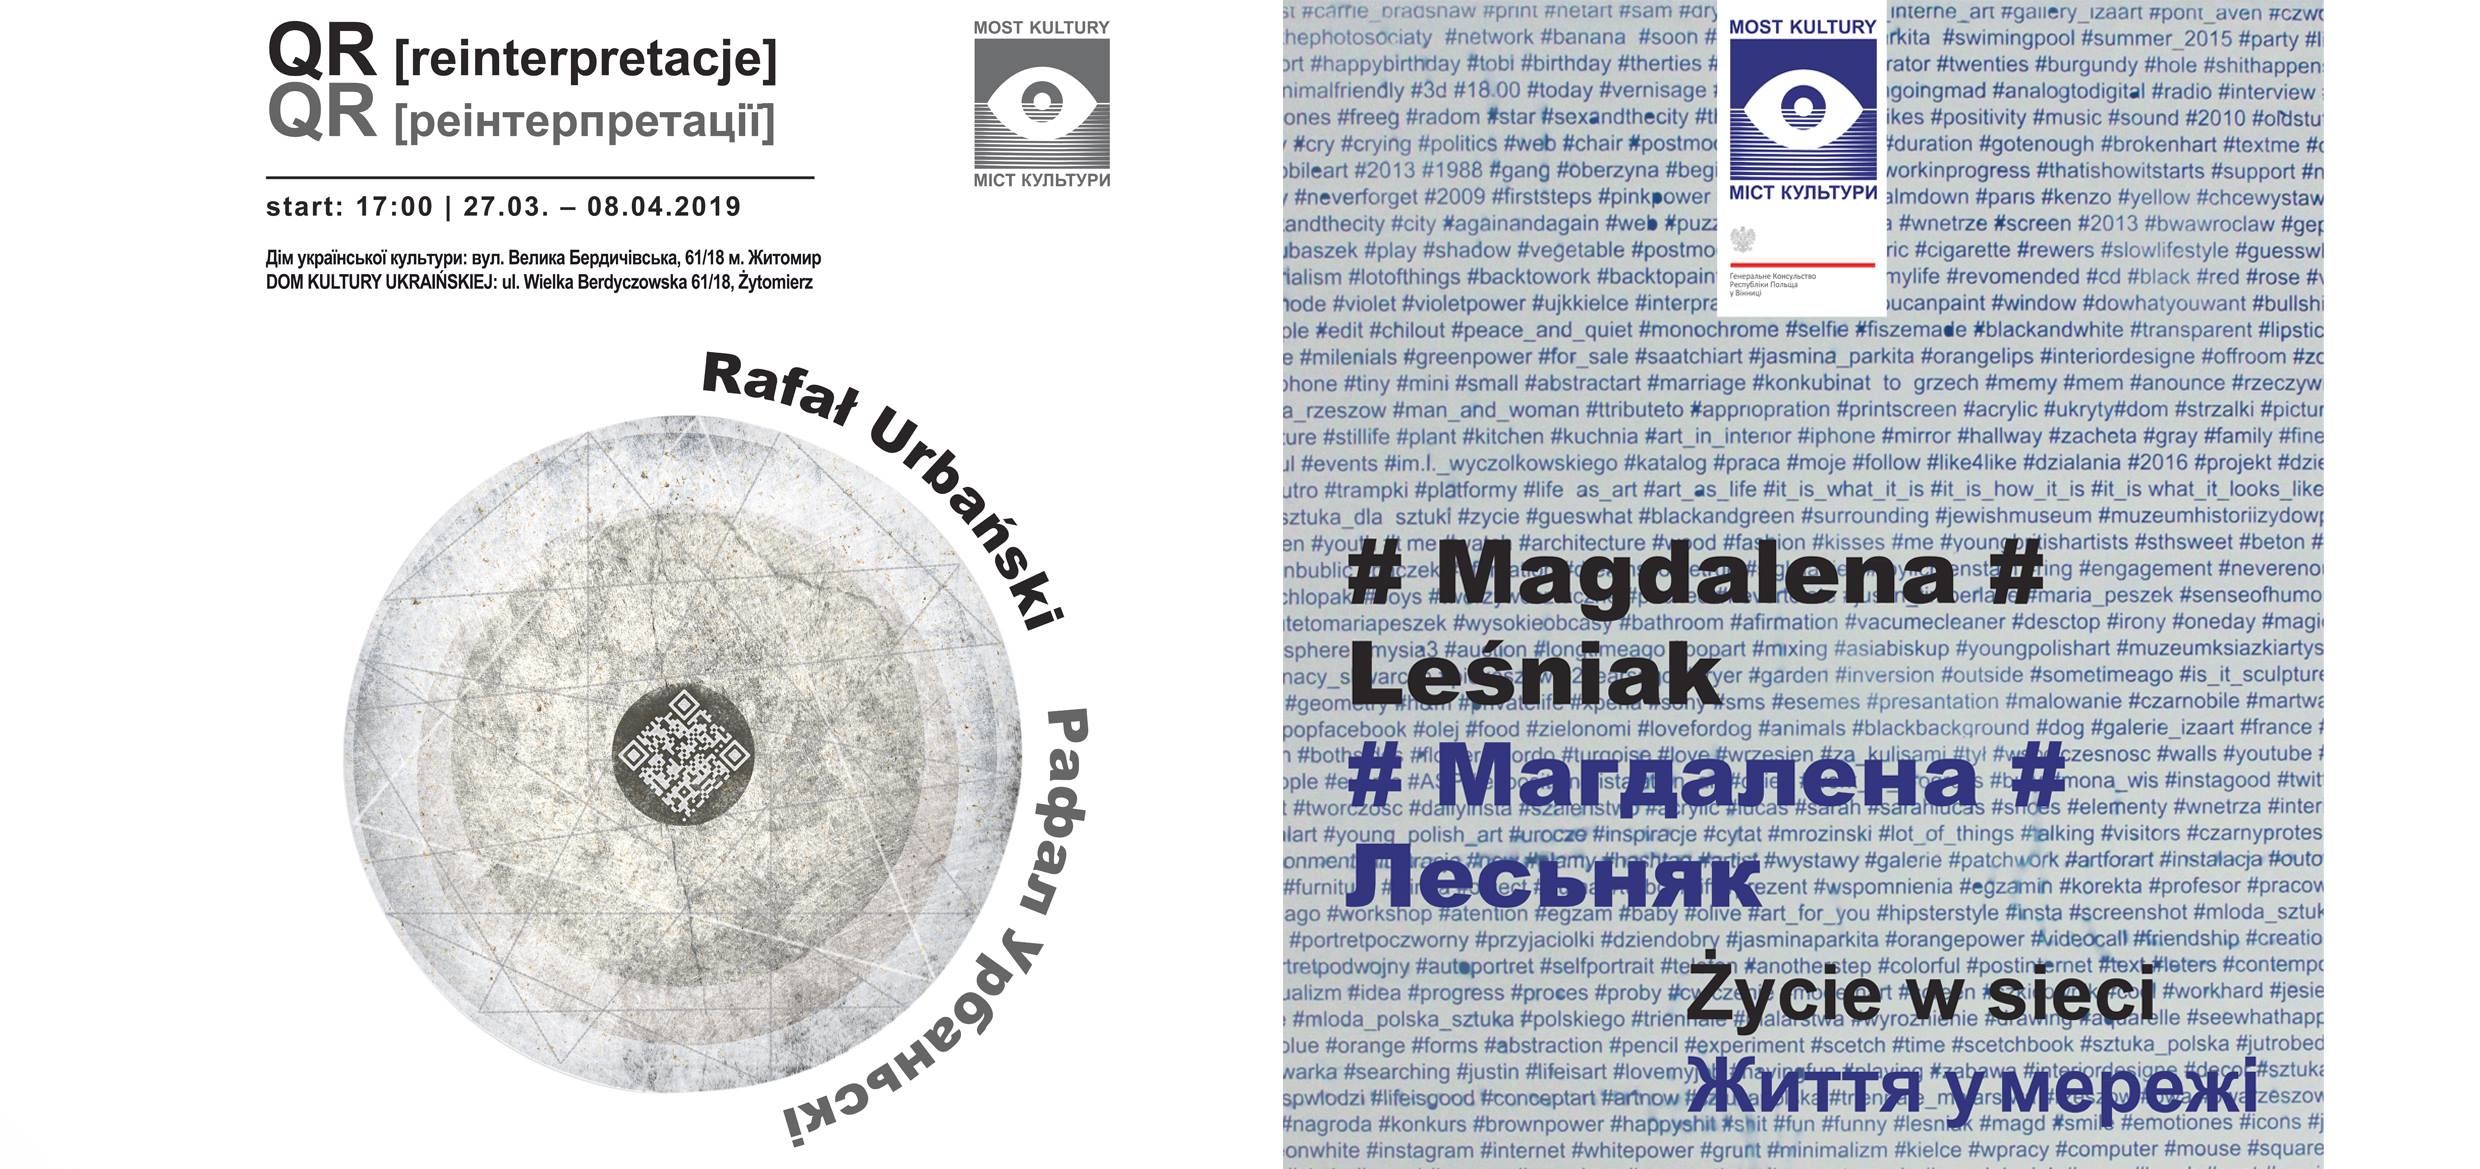 У Житомирі відкриють художню виставку Магдалени Лесьняк «Життя в мережі» і Рафала Урбанського «QR [реінтерпретації]»